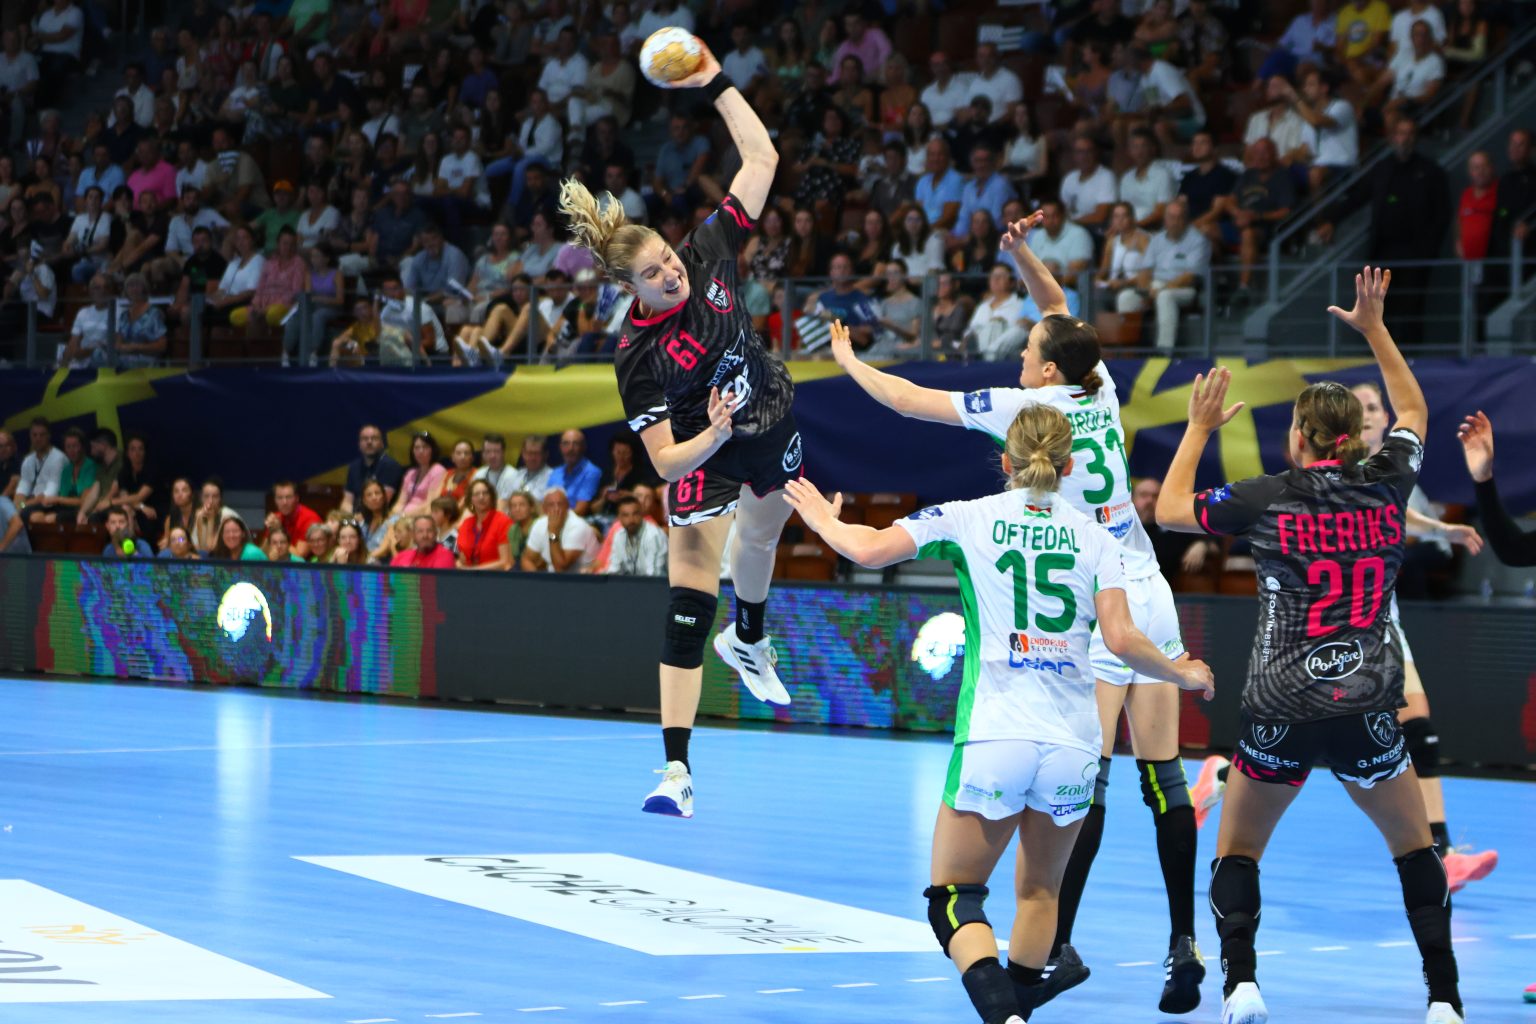 Fotó – Ellenfélnézőben: Brest Bretagne Handball